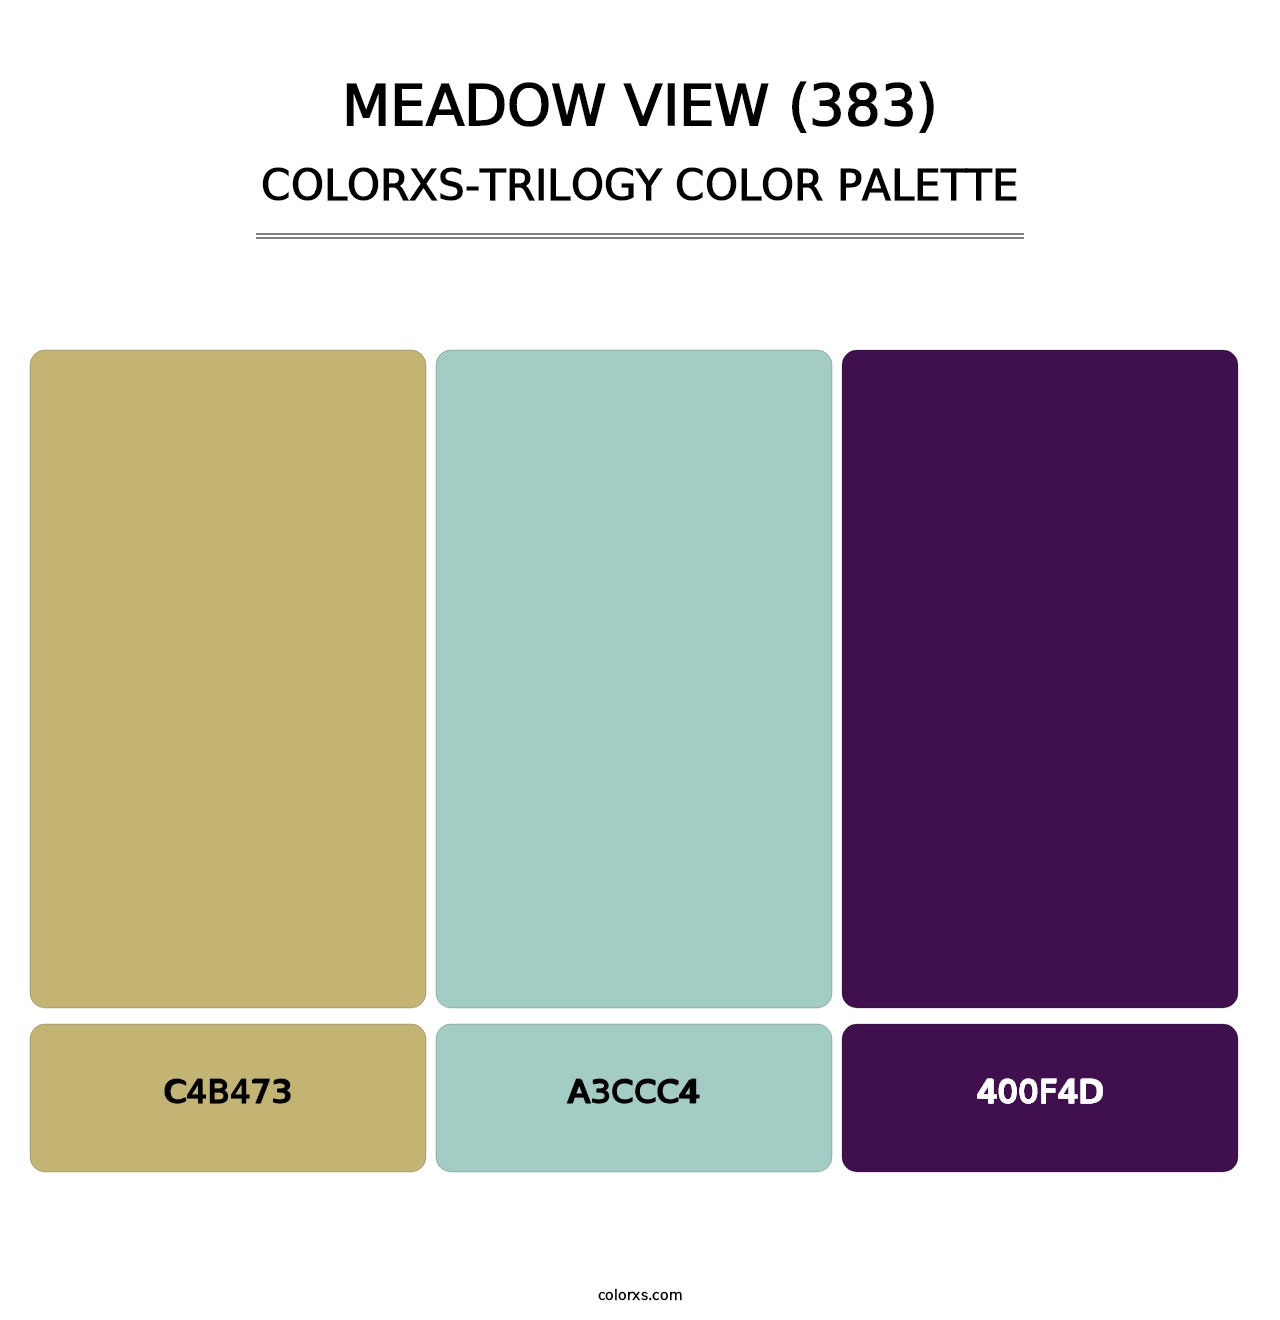 Meadow View (383) - Colorxs Trilogy Palette